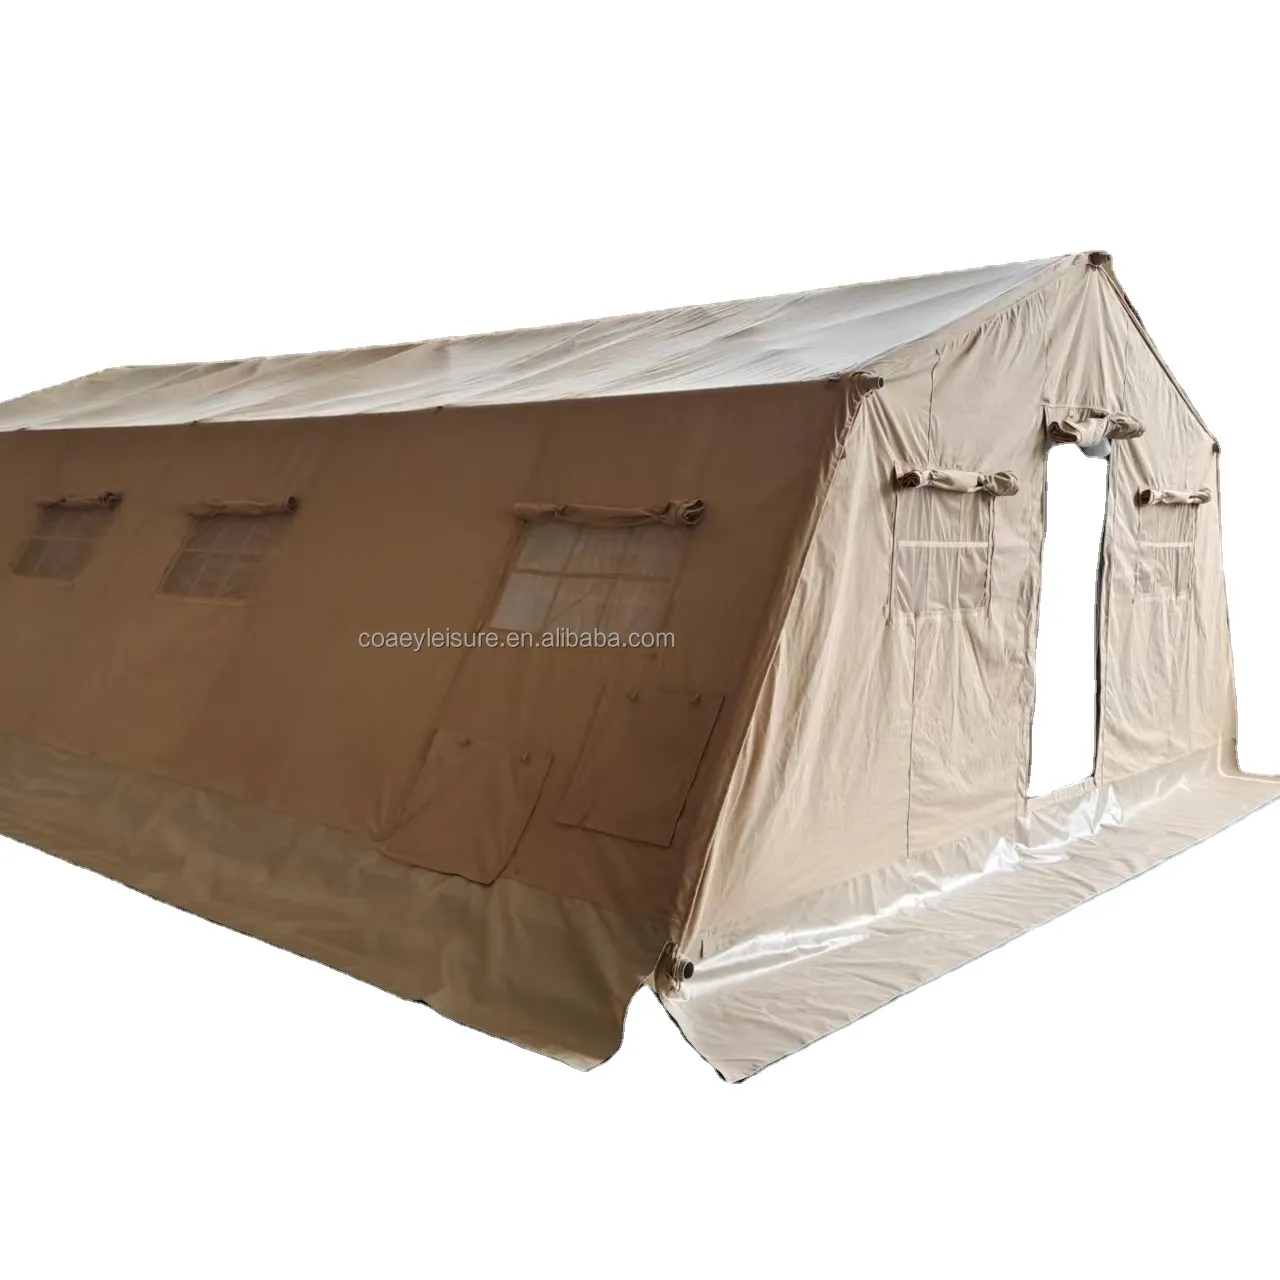 गुणवत्ता प्राथमिक चिकित्सा तम्बू 5 करने के लिए 20 व्यक्तियों कैनवास के साथ मजबूत पोल आपदा राहत तम्बू के लिए आपातकालीन